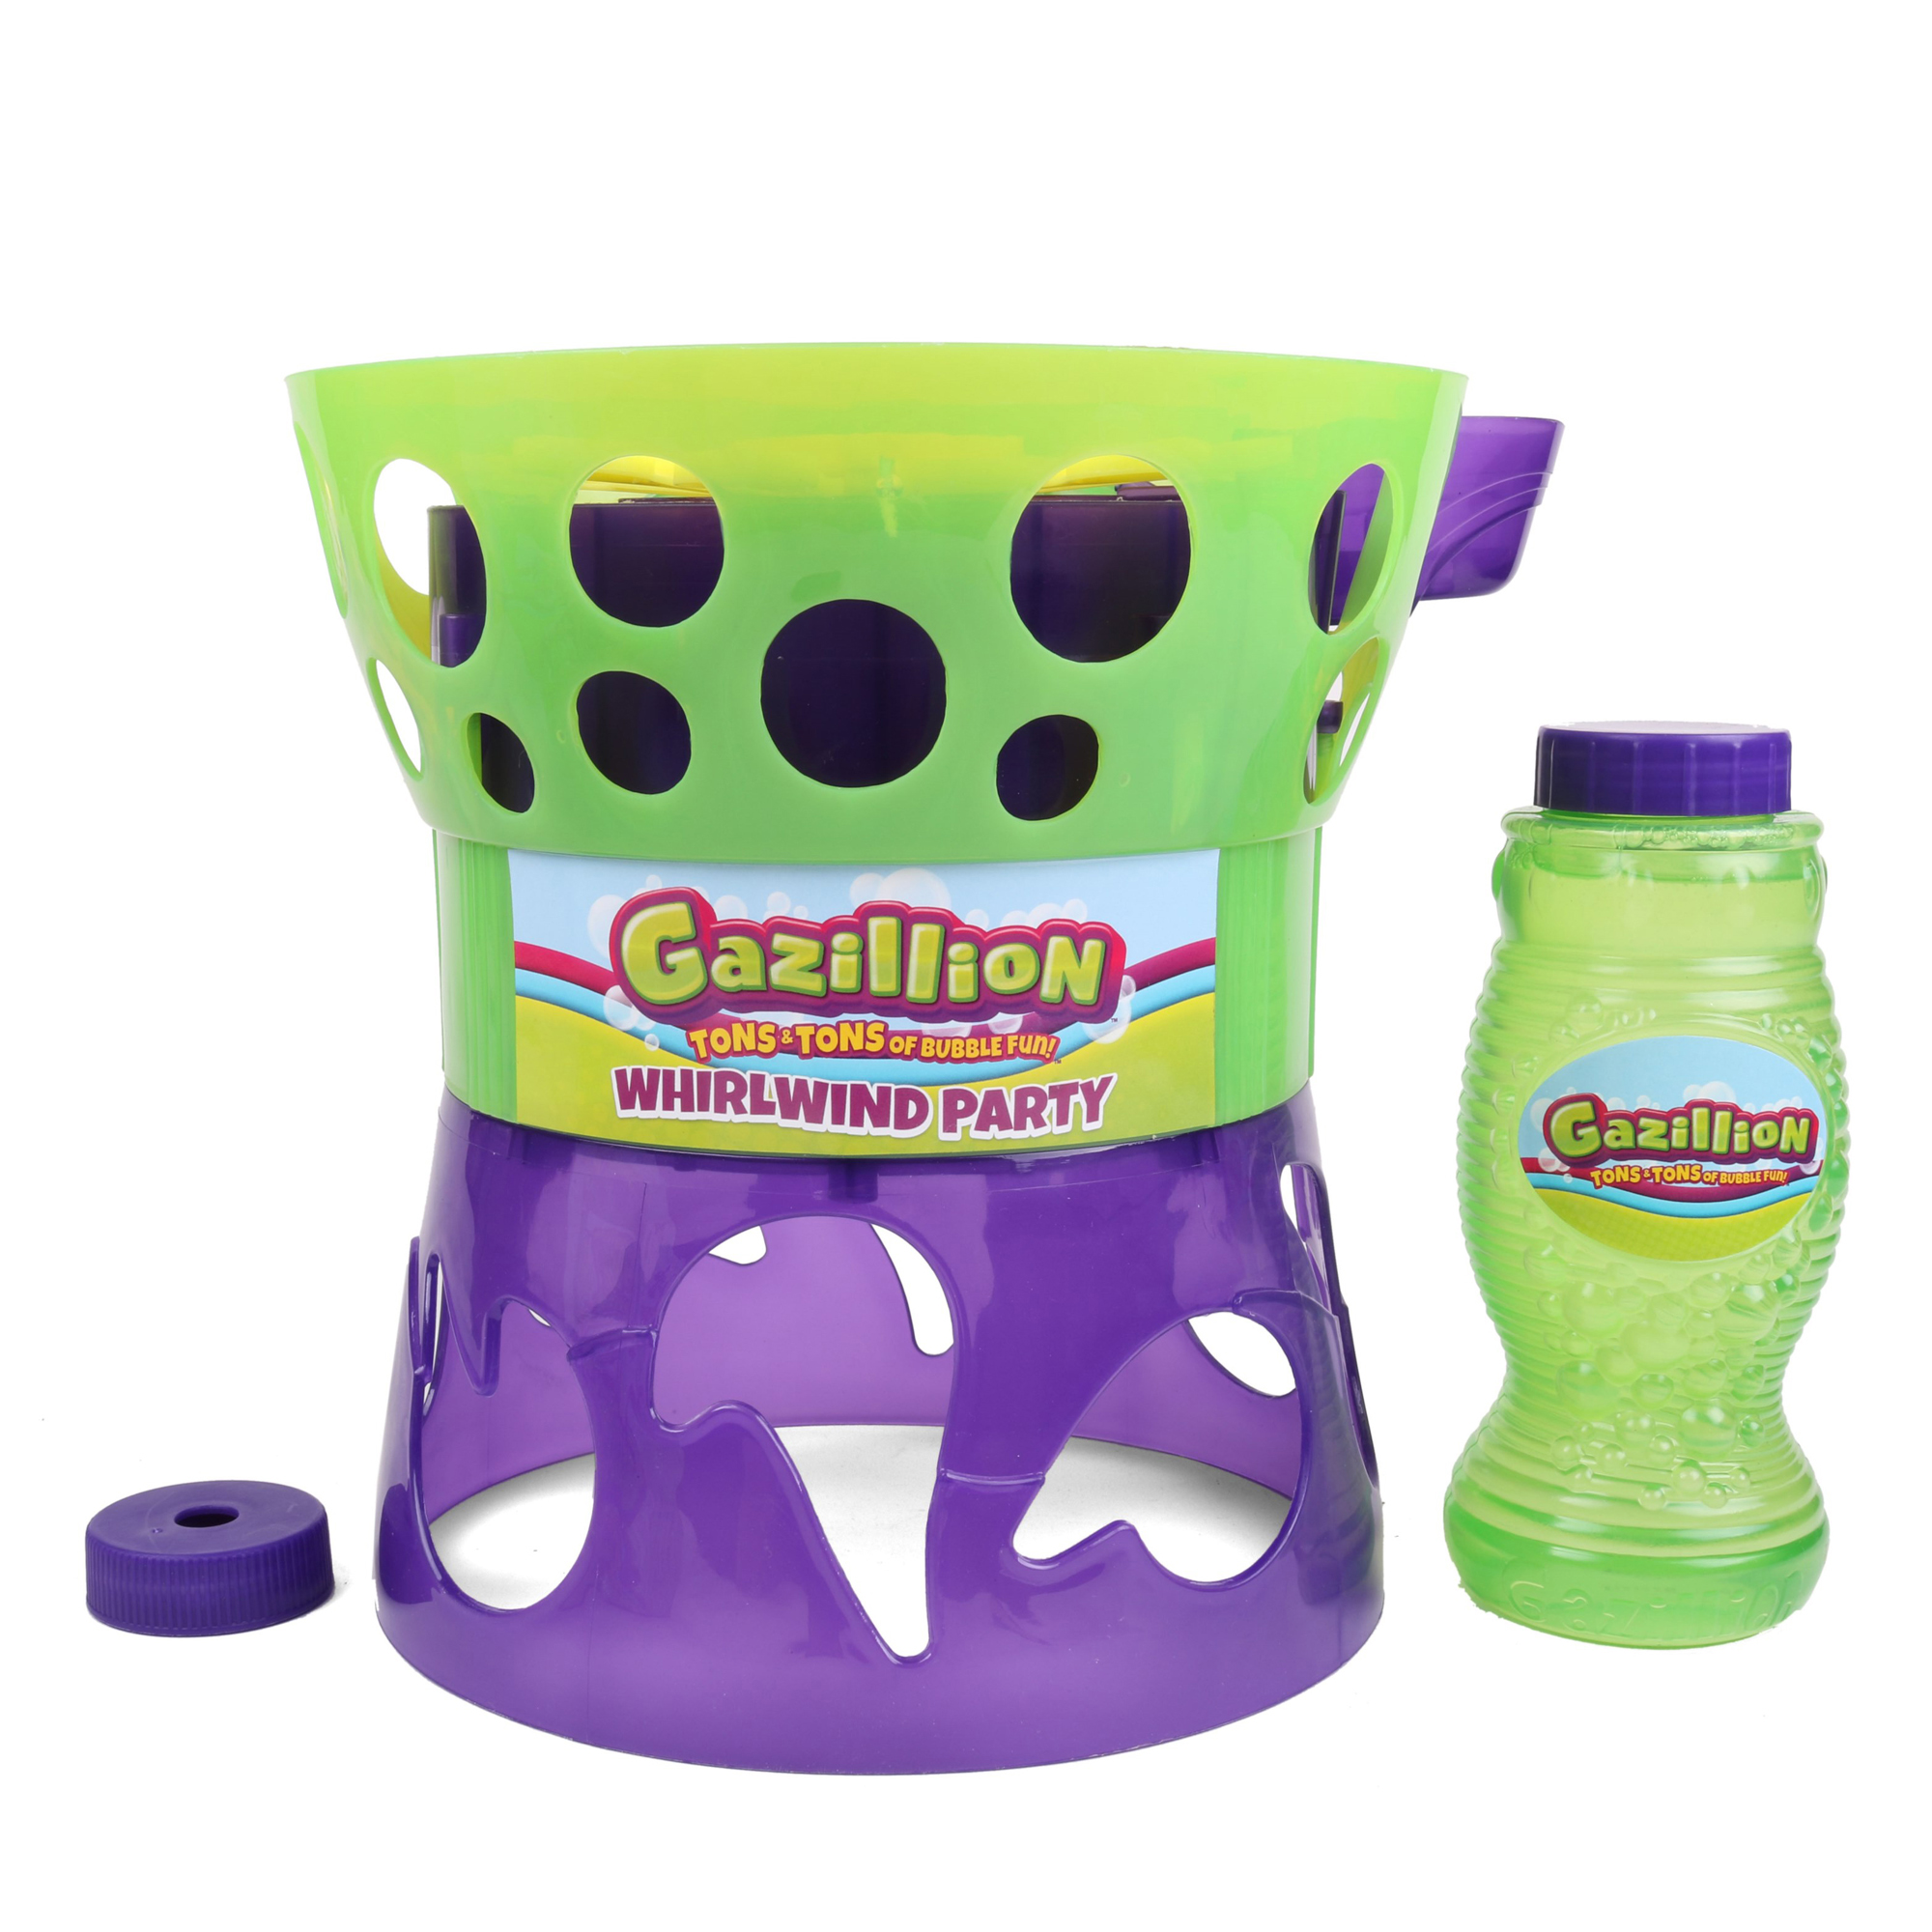 Gazillion Bubbles Whirlwind Party Bubble Machine $18.25 + Free Shipping $35+ Walmart